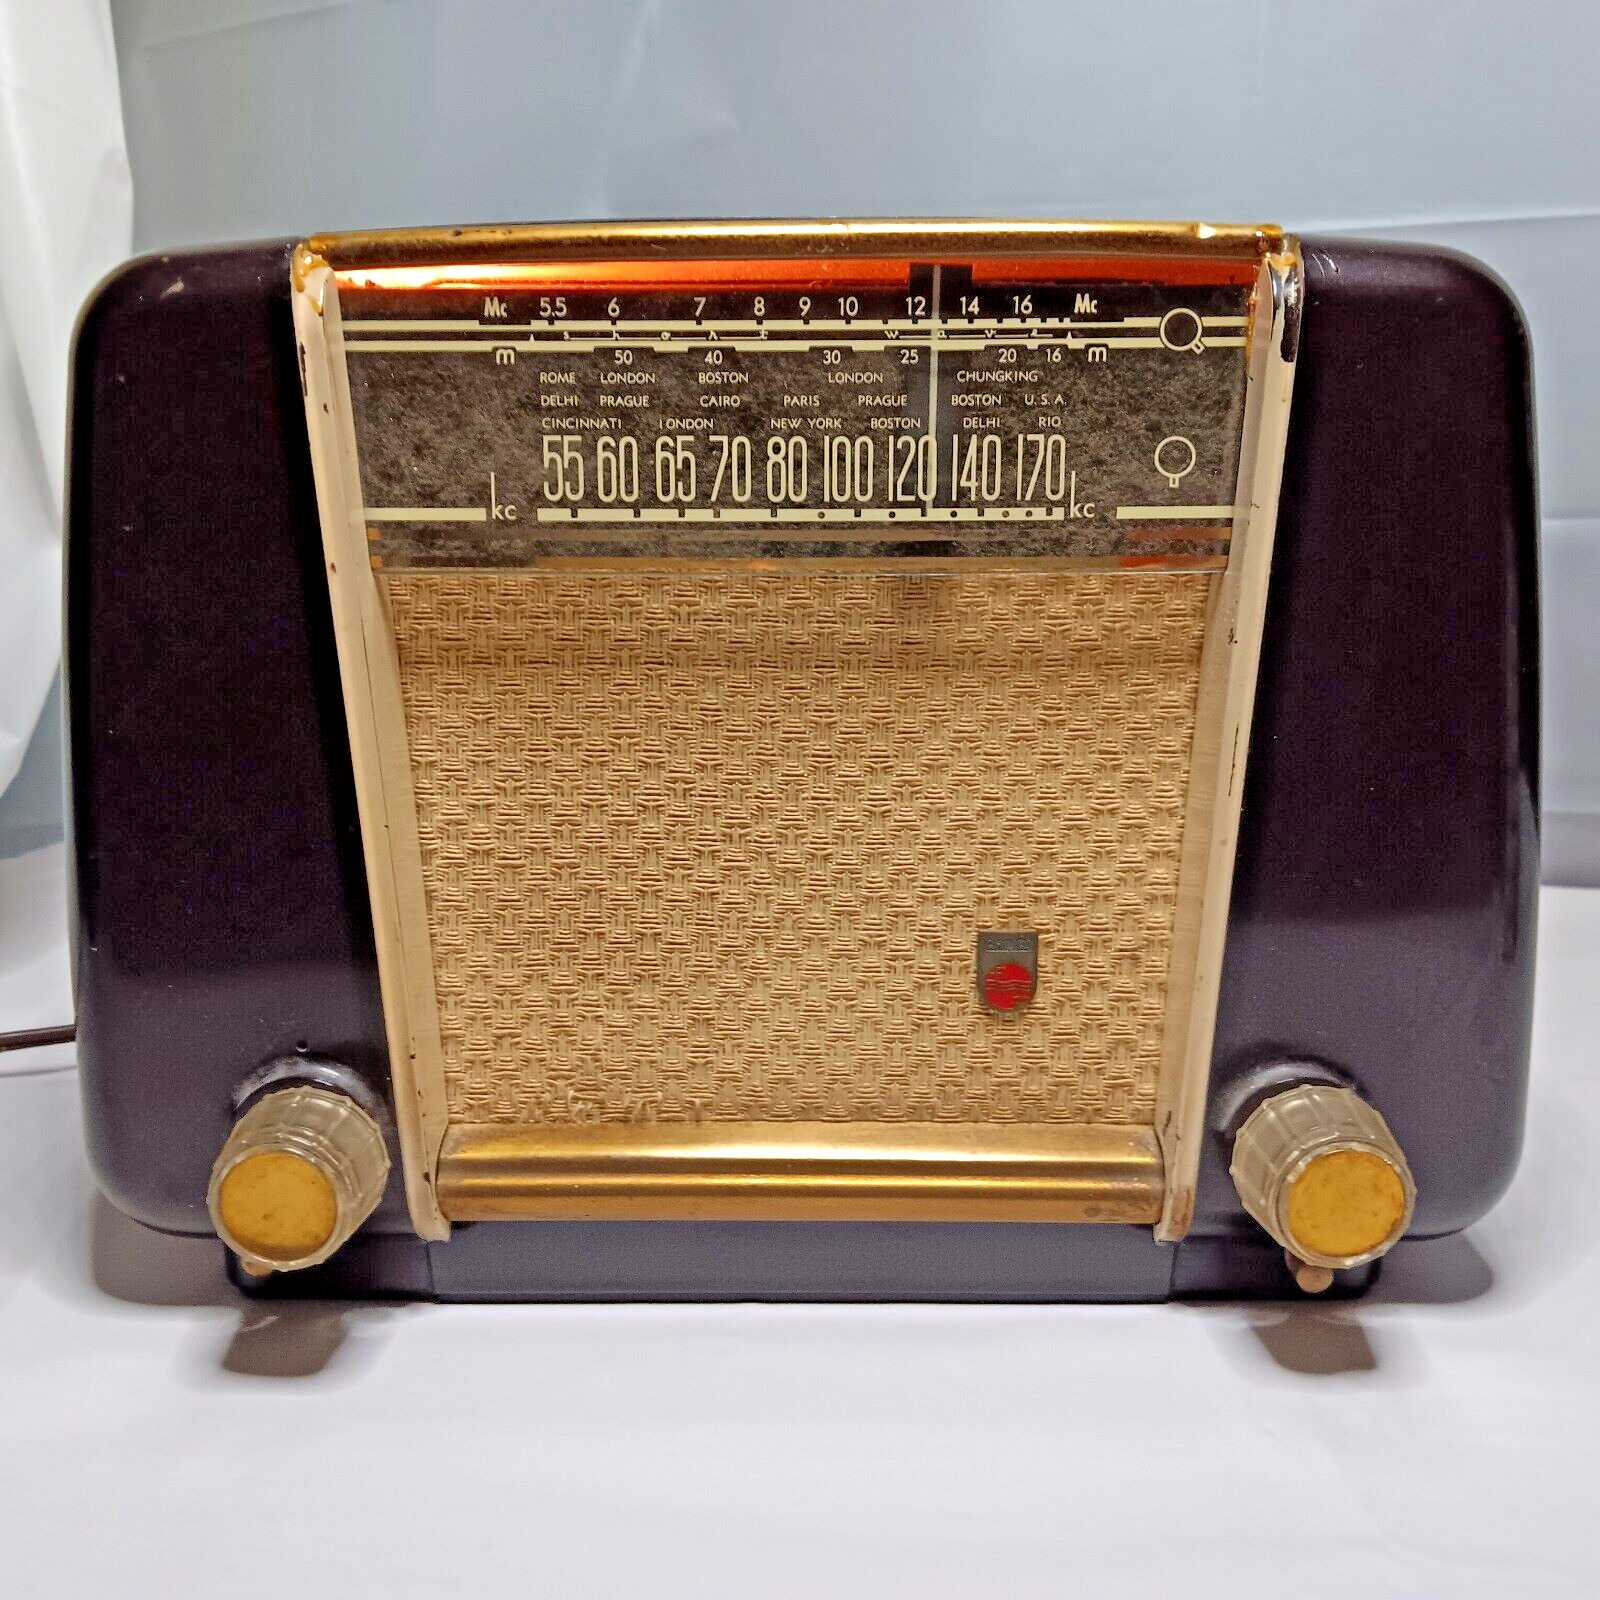 VTG Working Philips Radio Type 818 AM Phono 1950s